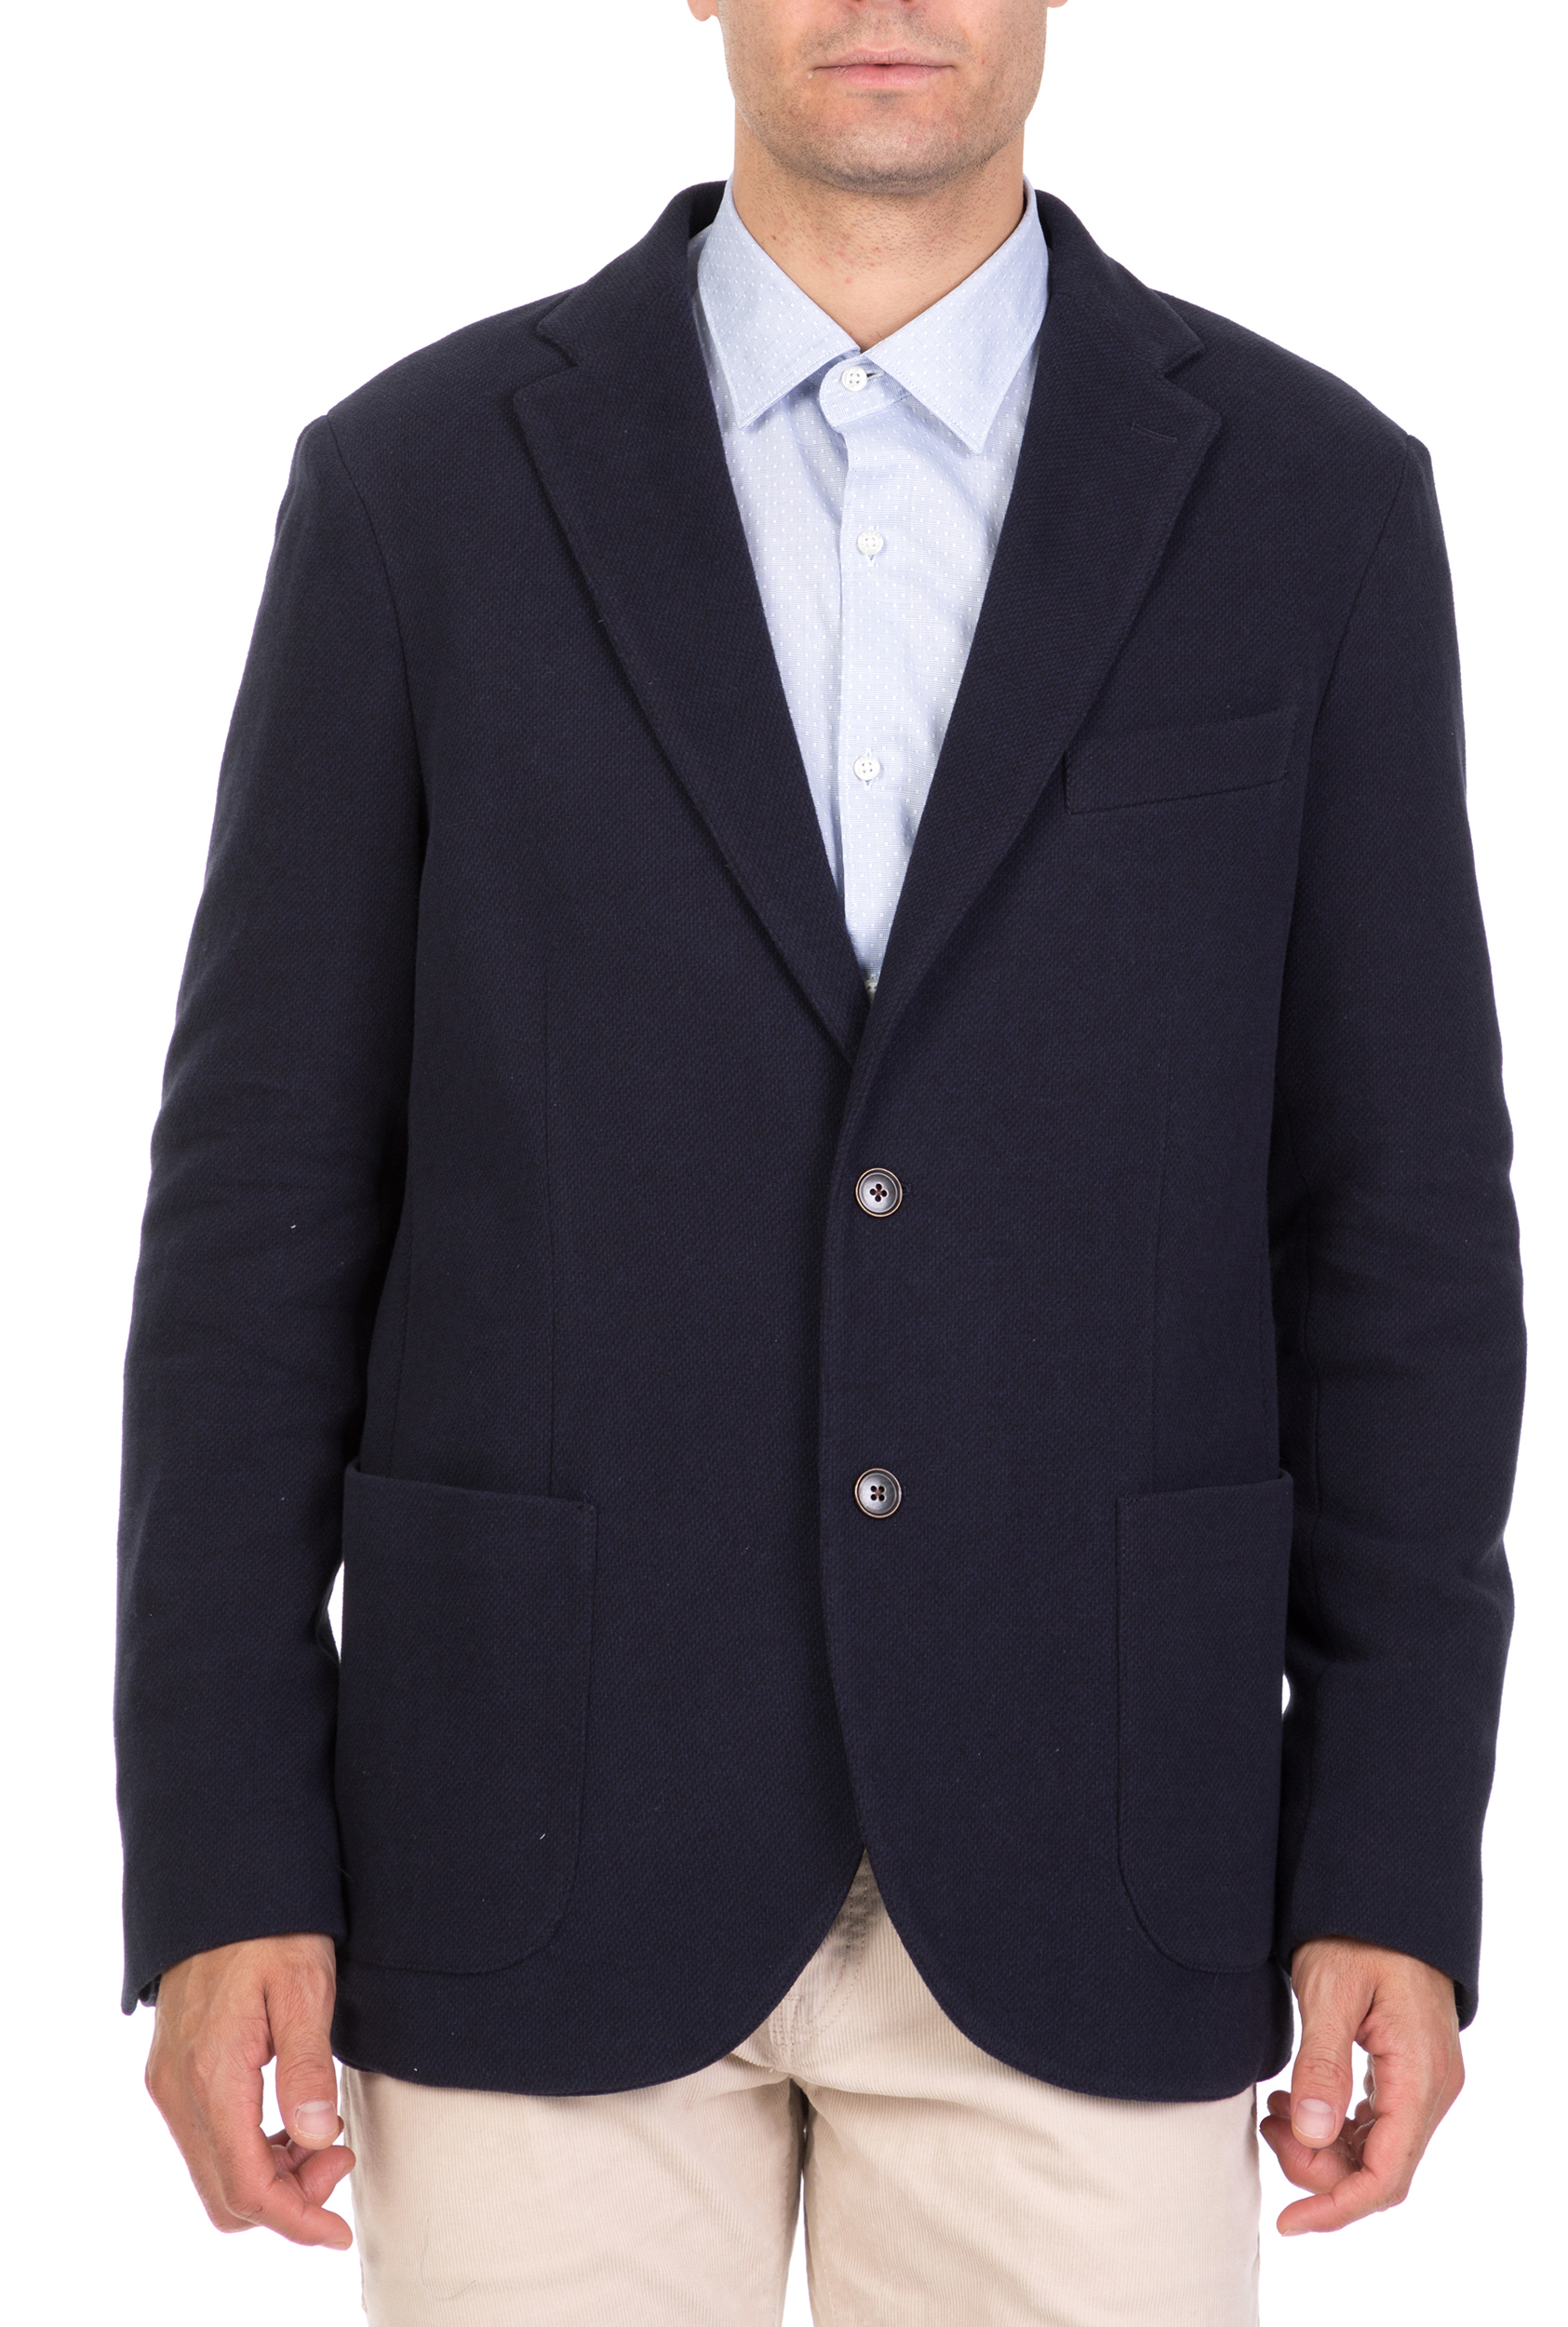 Ανδρικά/Ρούχα/Πανωφόρια/Σακάκια BROOKSFIELD - Ανδρικό σακάκι BROOKSFIELD μπλε